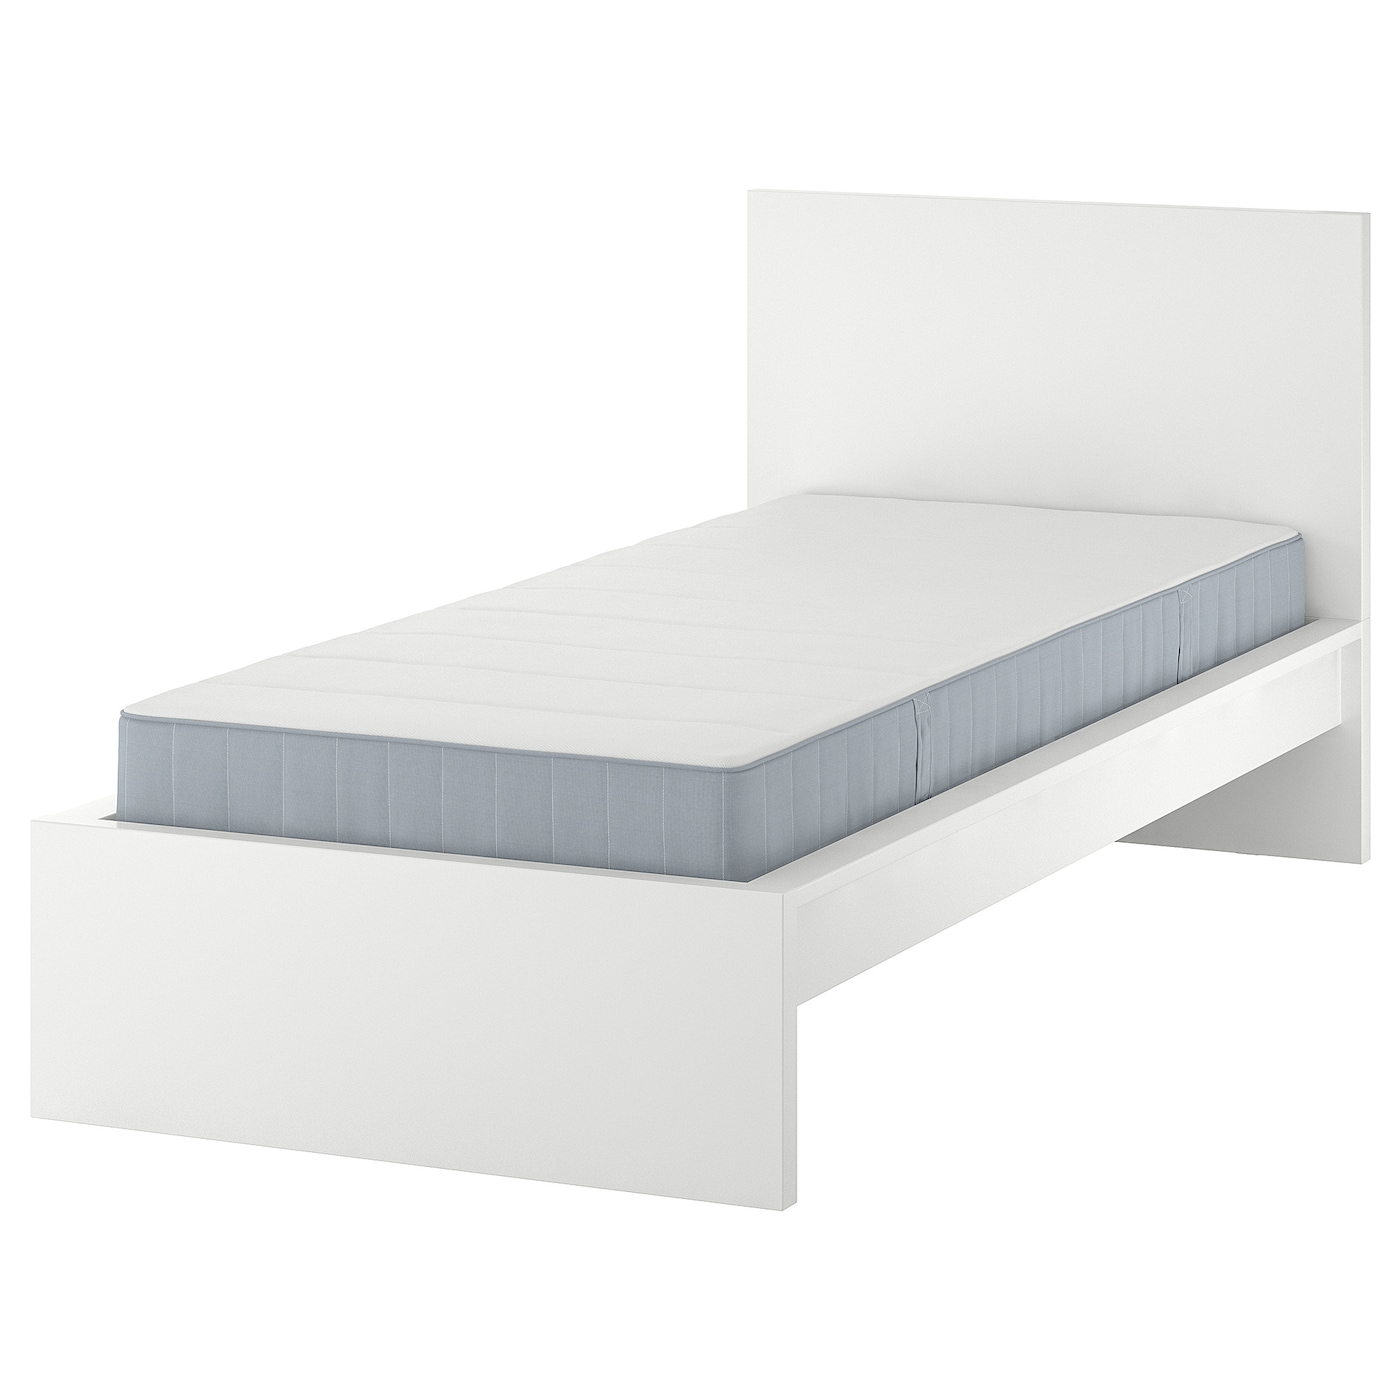 Кровать - IKEA MALM, 200х90 см, матрас жесткий, белый, МАЛЬМ ИКЕА